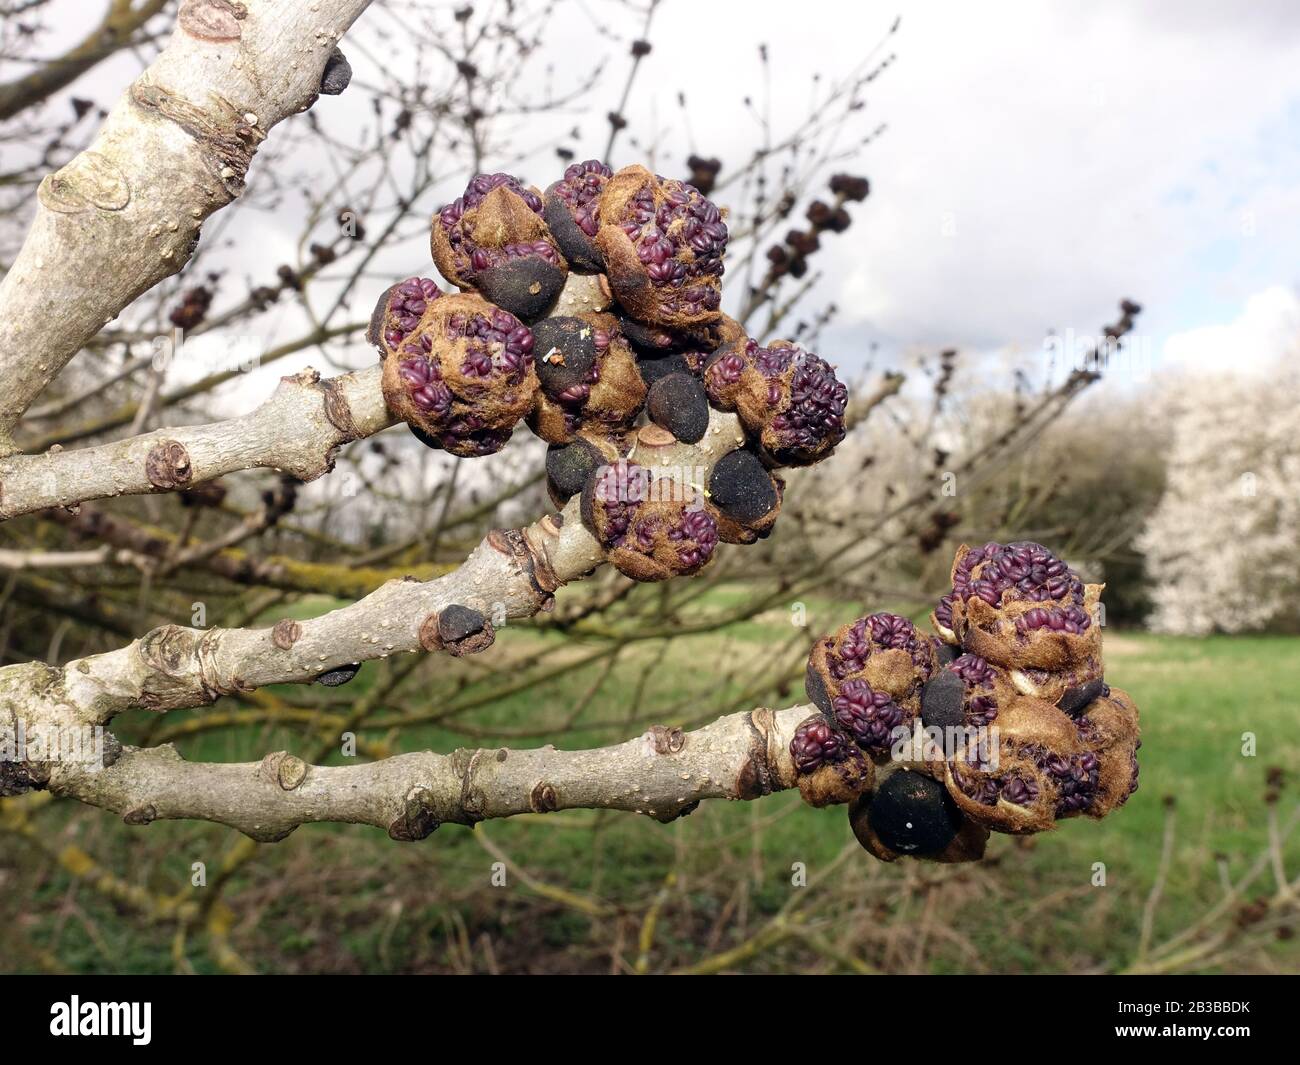 Violette Blütenknospen einer Gemeinenoder Gewöhnlichen Esche (Fraxinus excelsior), im Hintergrund eine Streuostwiese, Weilerswist, Nordrhein-Westfalen Foto Stock